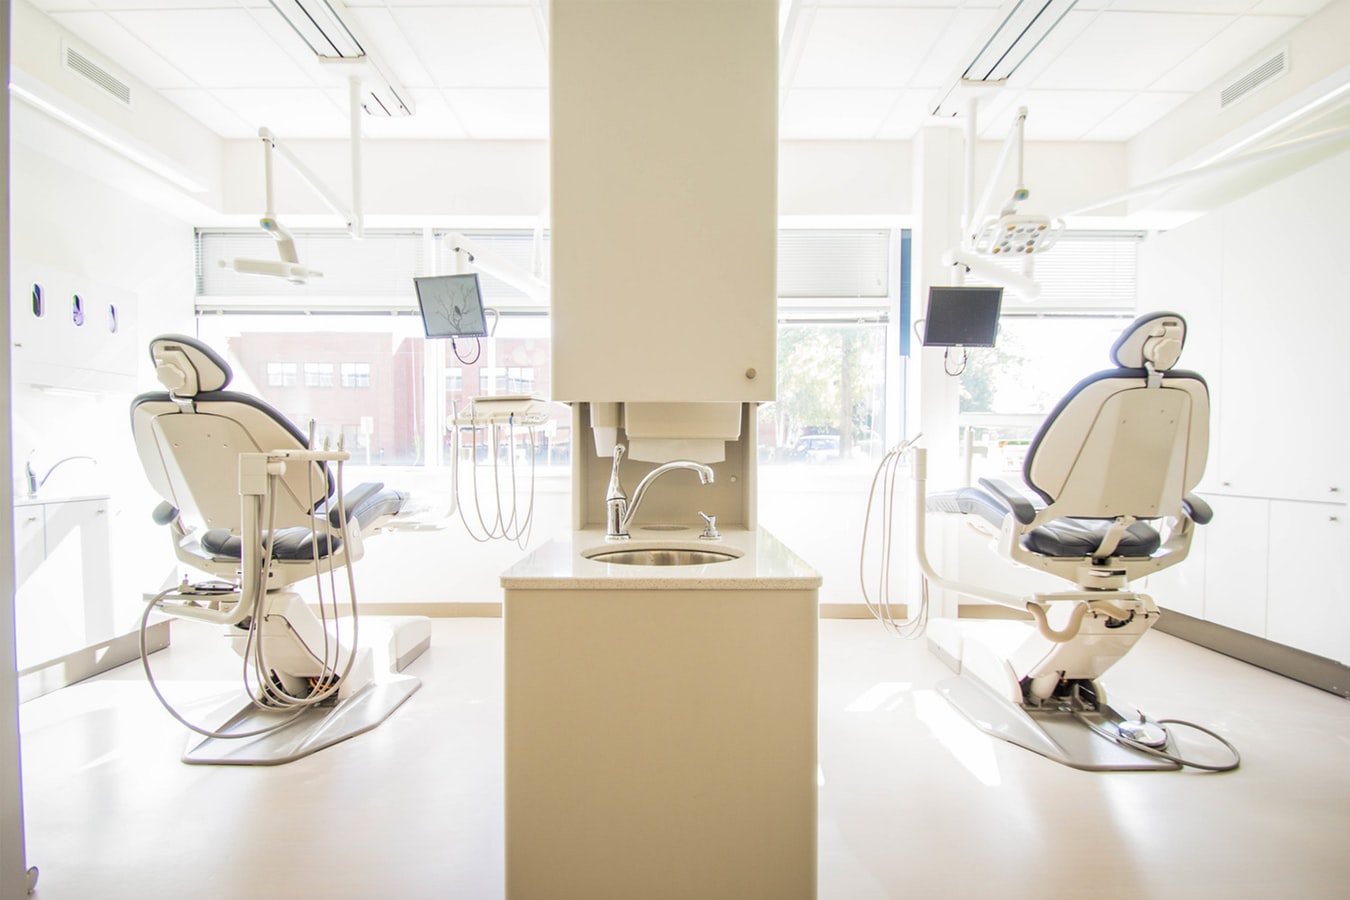 Una conocida red de clínicas dentales ofrece contratos abiertos y sueldos de hasta 3.000 euros (y no necesitas sólo dentistas) – Resumen Ejecutivo